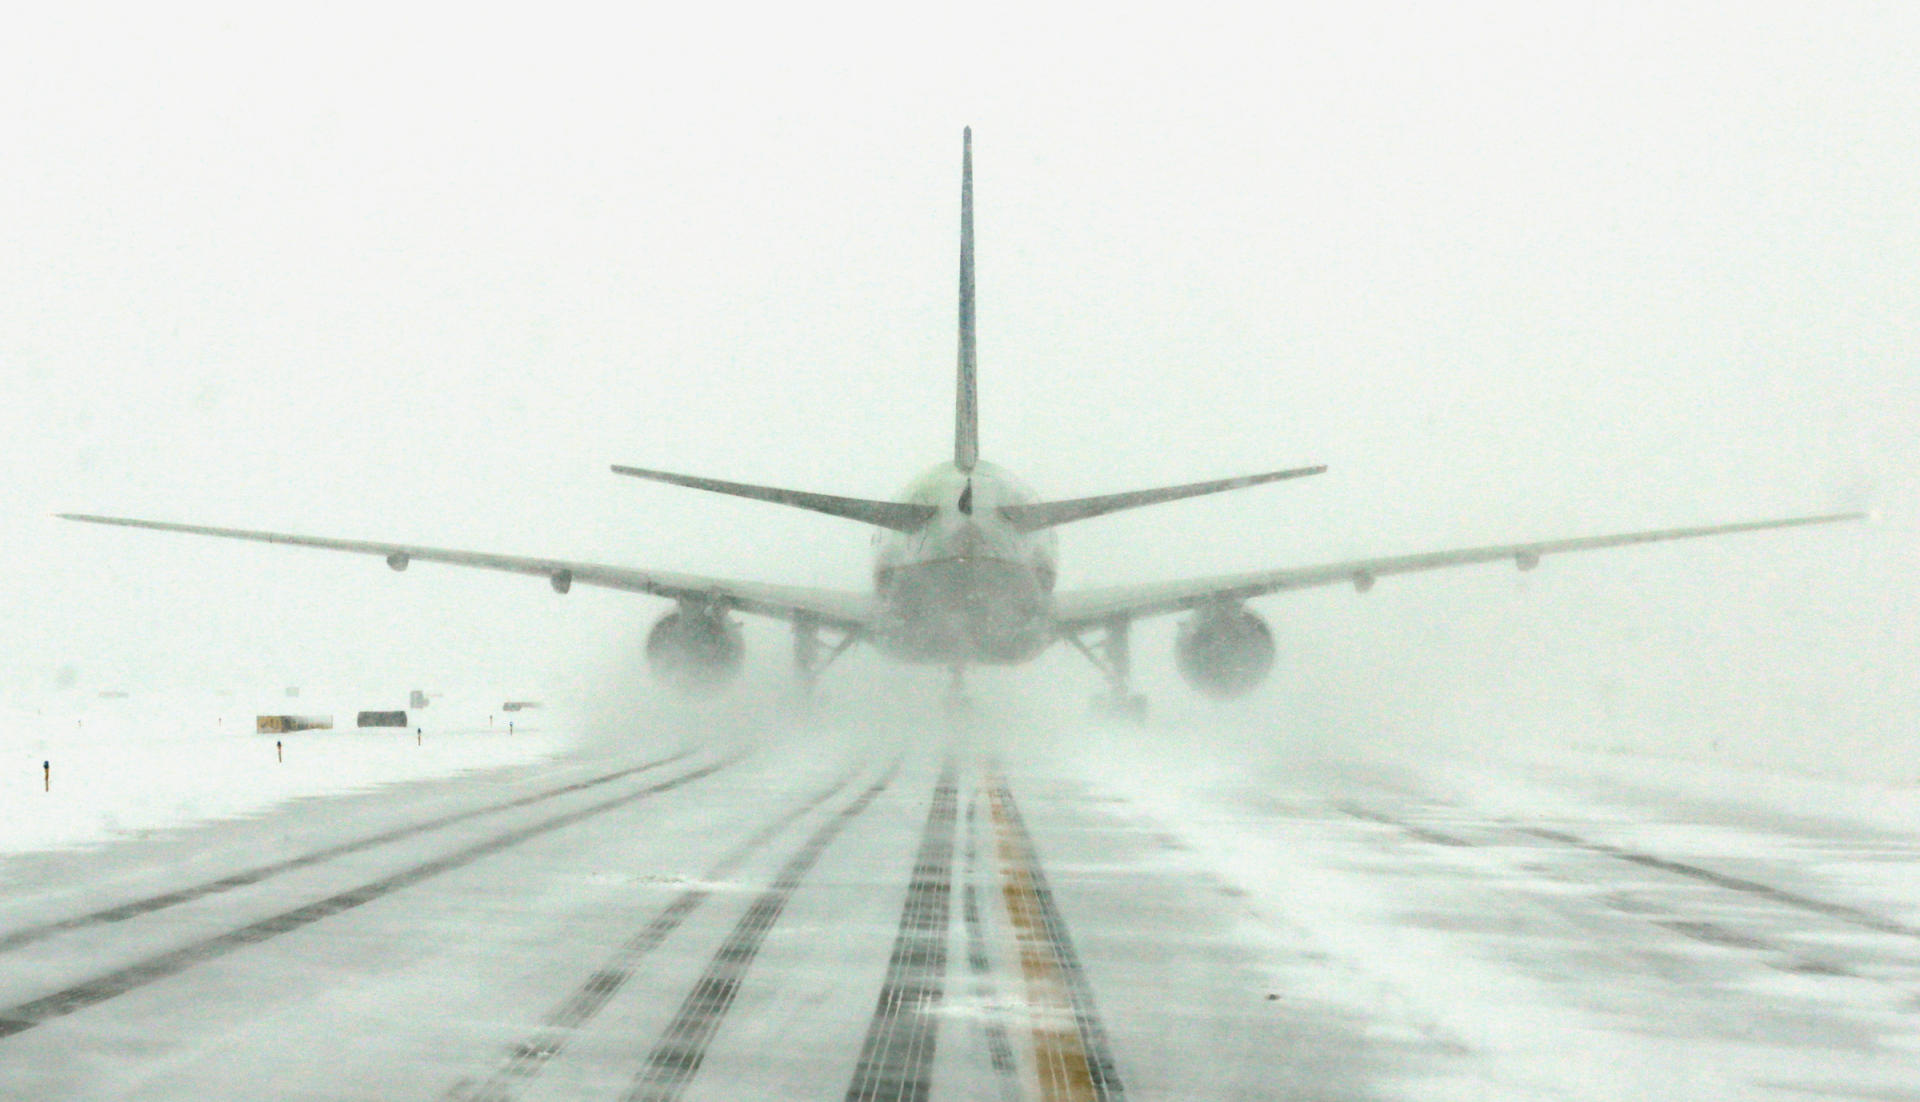 Вылеты из аэропорта в Тегеране приостановлены из-за снегопада